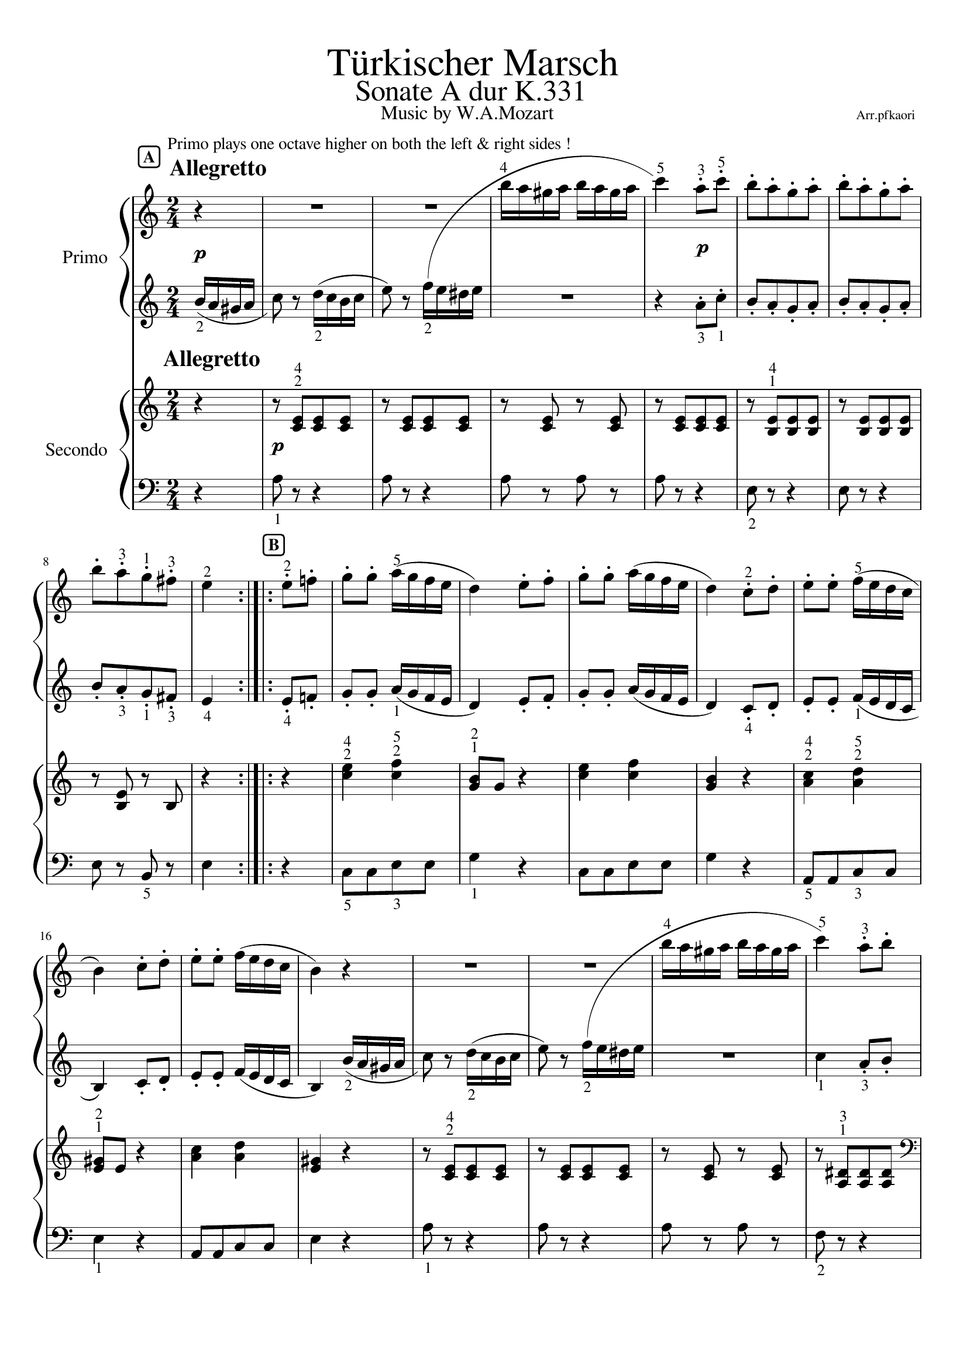 モーツァルト - トルコ行進曲 (スコア譜・ピアノ連弾初~中級) by pfkaori